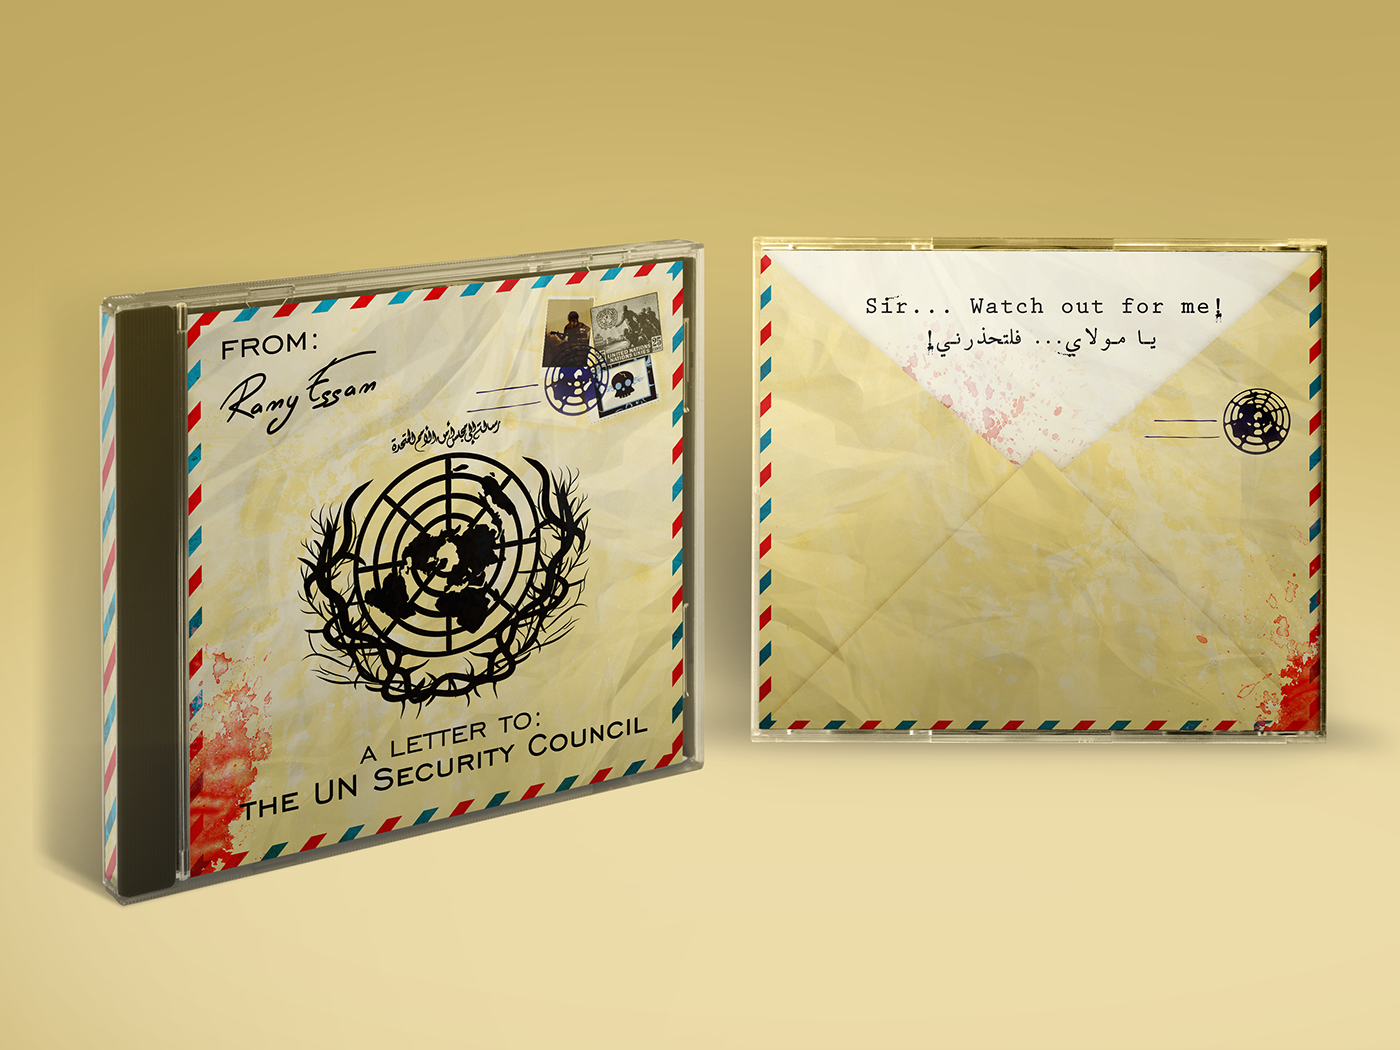 Ramy essam  letter Album artwork non-official UN SECURITY COUNCIL